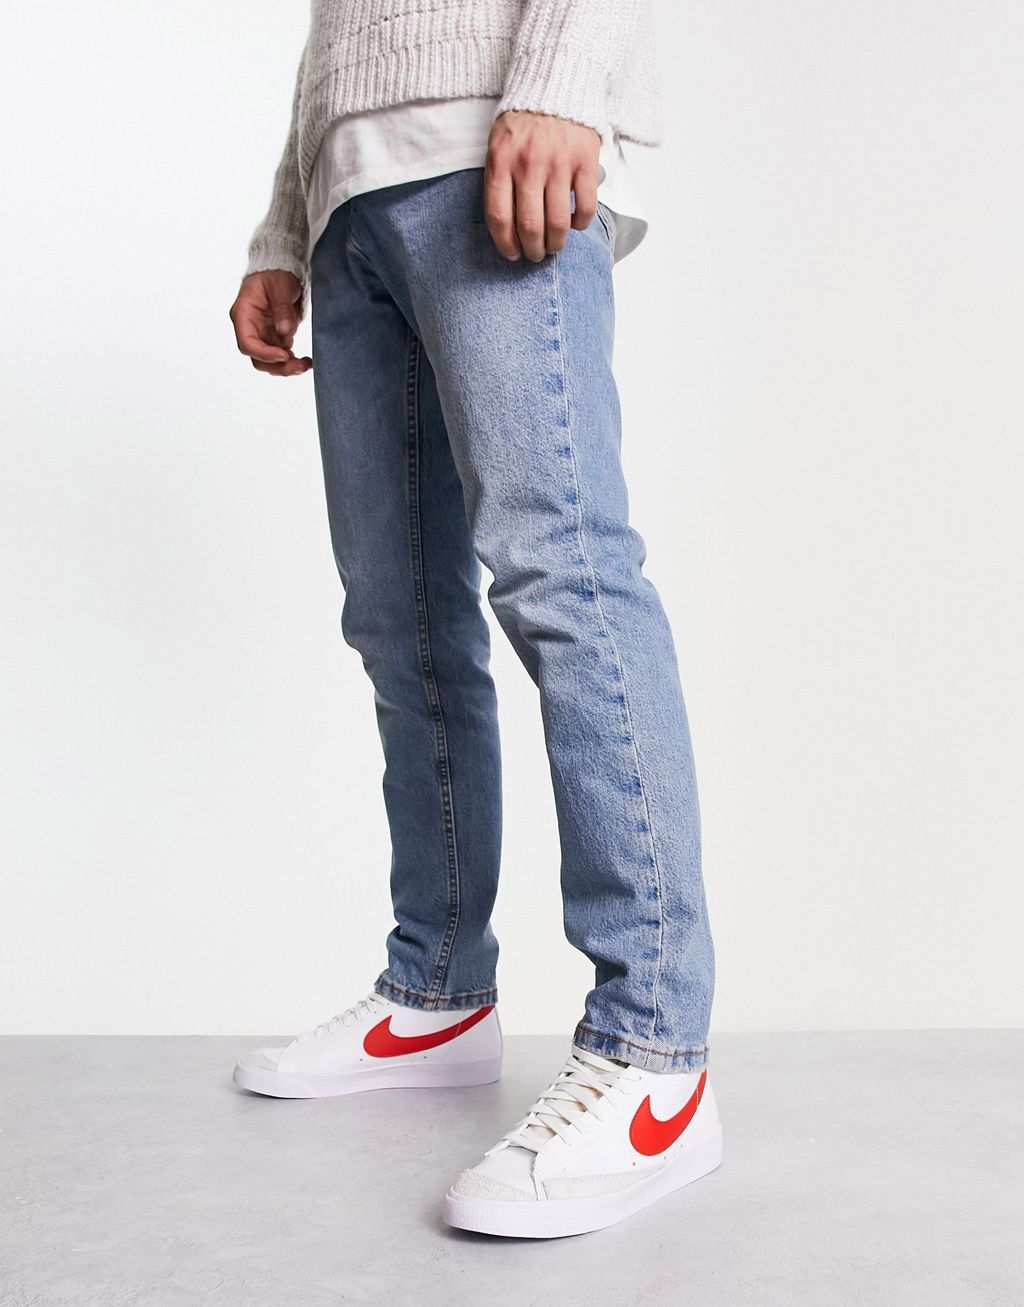 Белые кроссовки Nike Blazer Mid '77 с красной галочкой